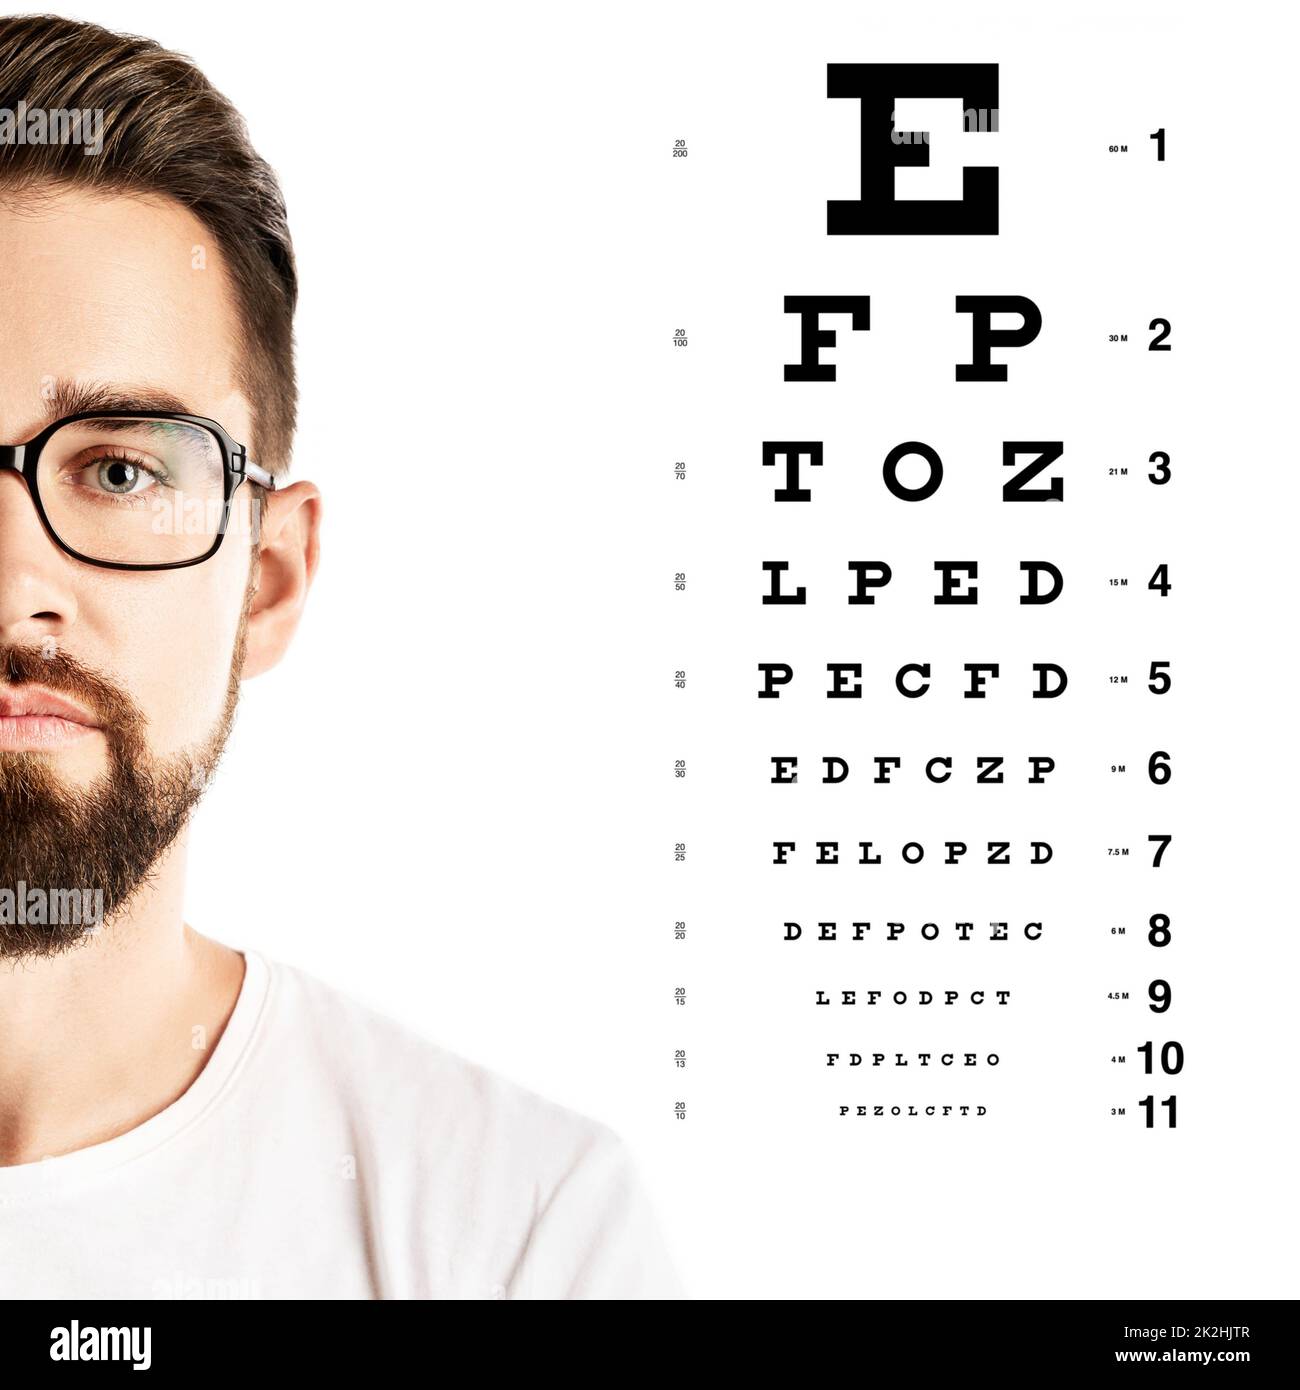 Homme portant des lunettes et un tableau visuel pour le test d'acuité visuelle Banque D'Images